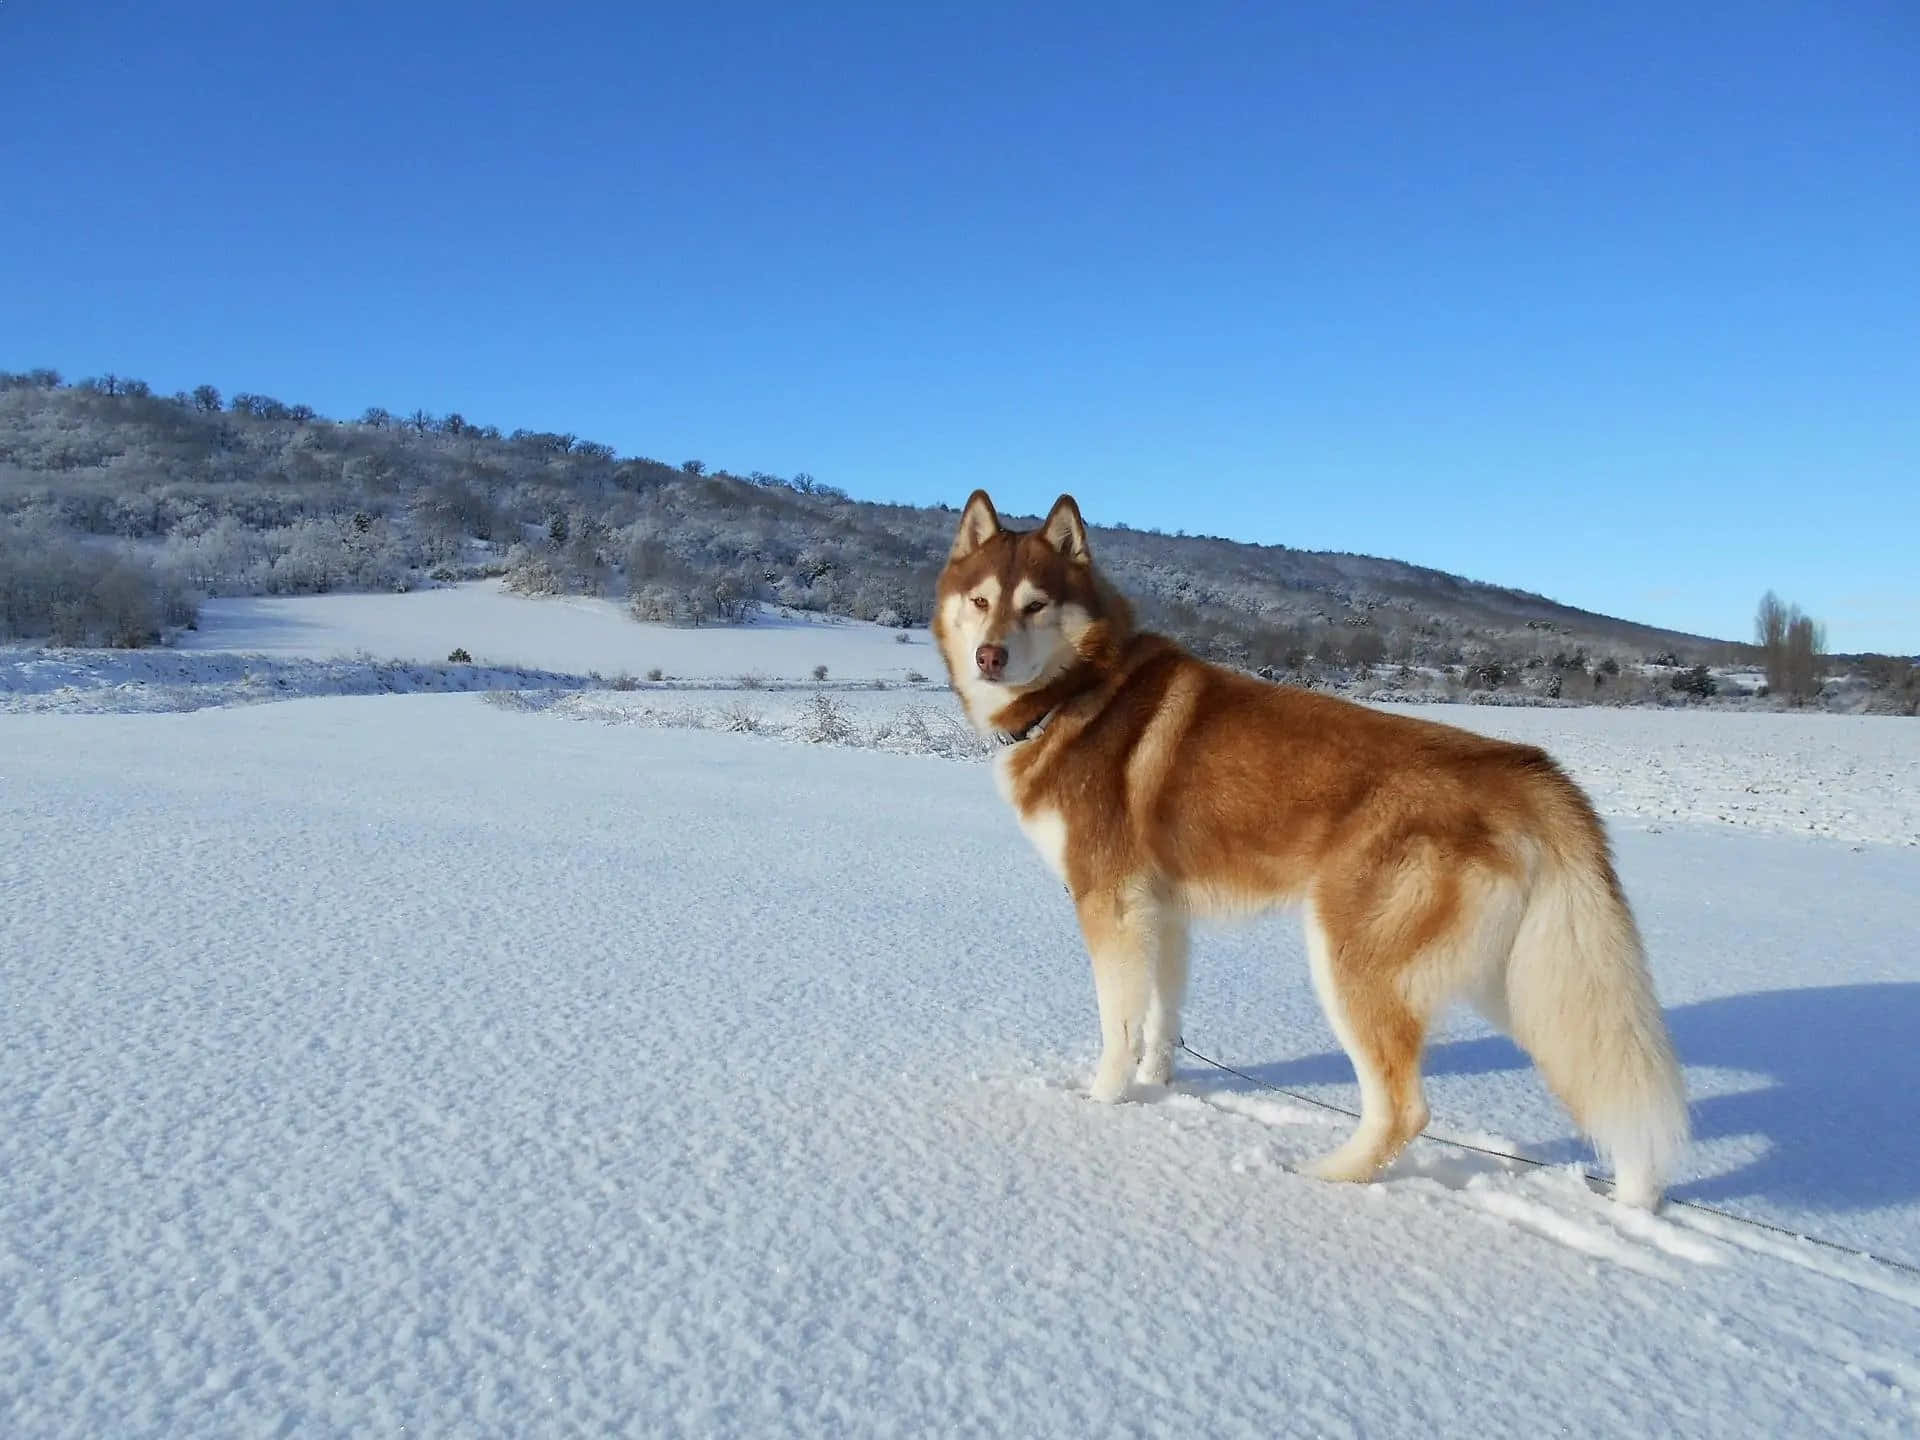 Imagende Un Perro Husky En Un Campo De Nieve